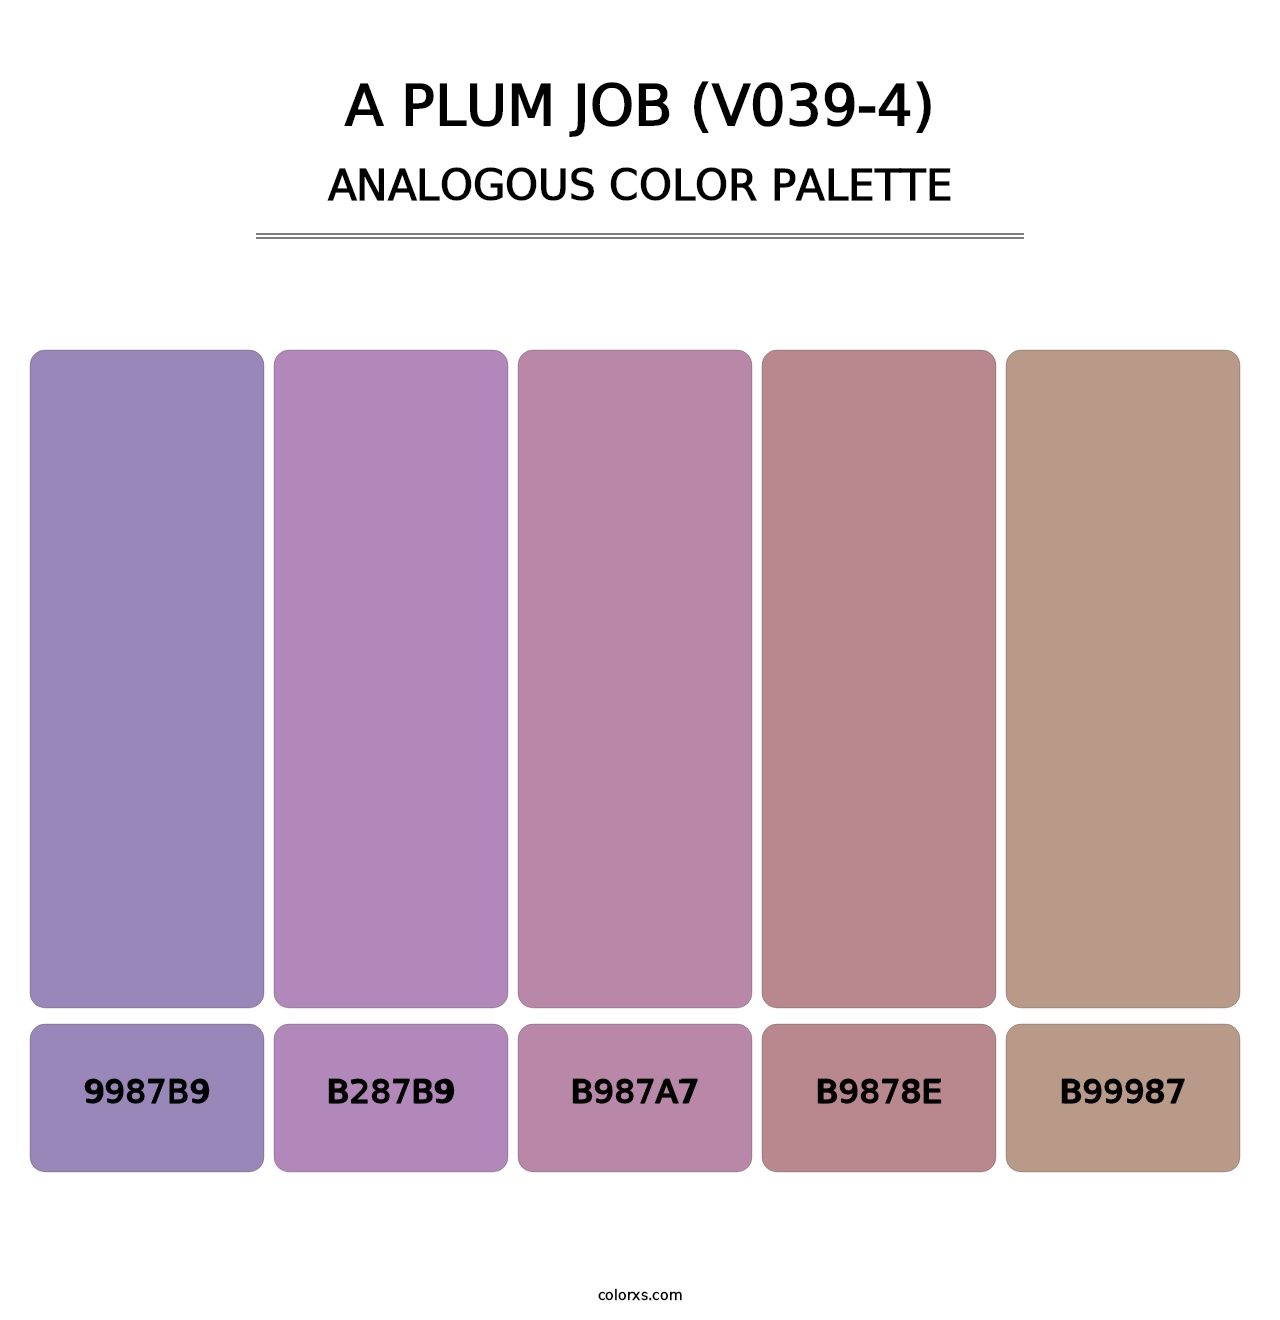 A Plum Job (V039-4) - Analogous Color Palette